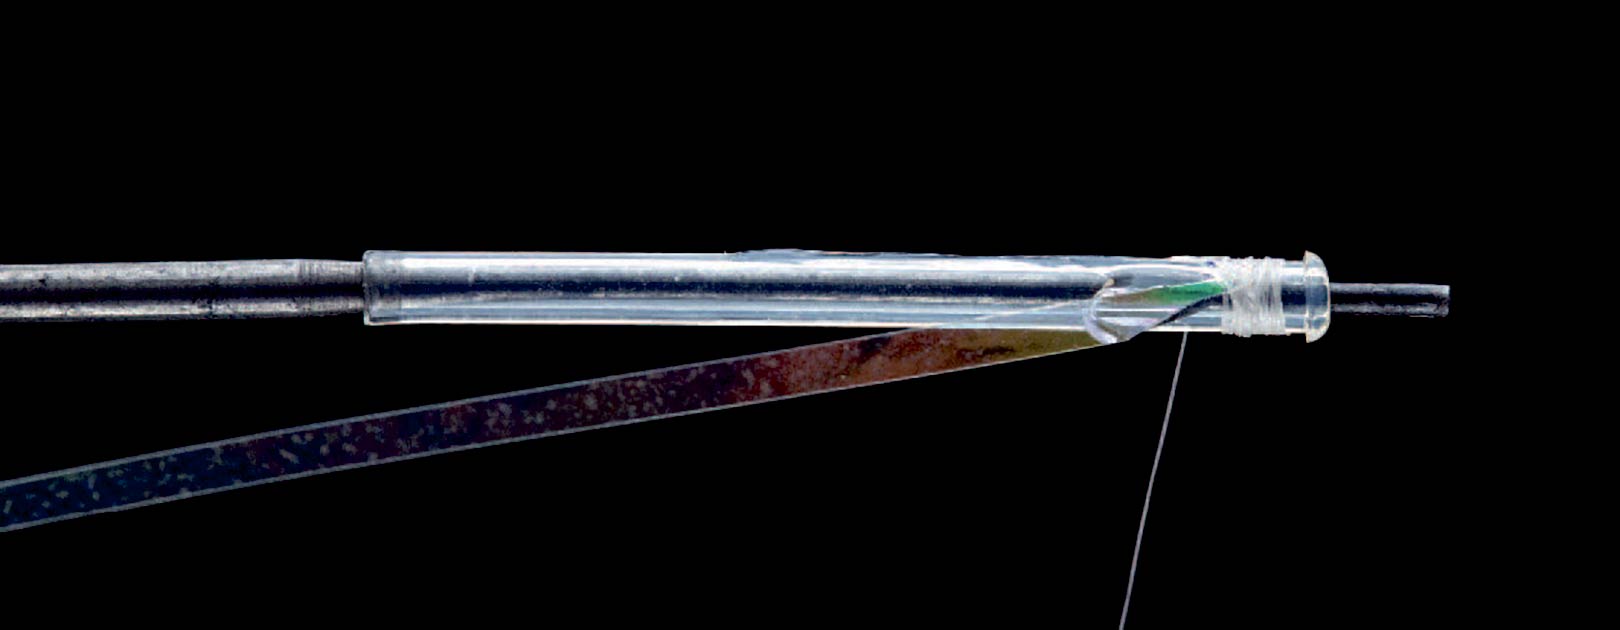 1: Monter røret på en nål eller lignende og bind cirka 15 centimeter mylar i farven pearl ind to millimeter bag rørets forreste ende.